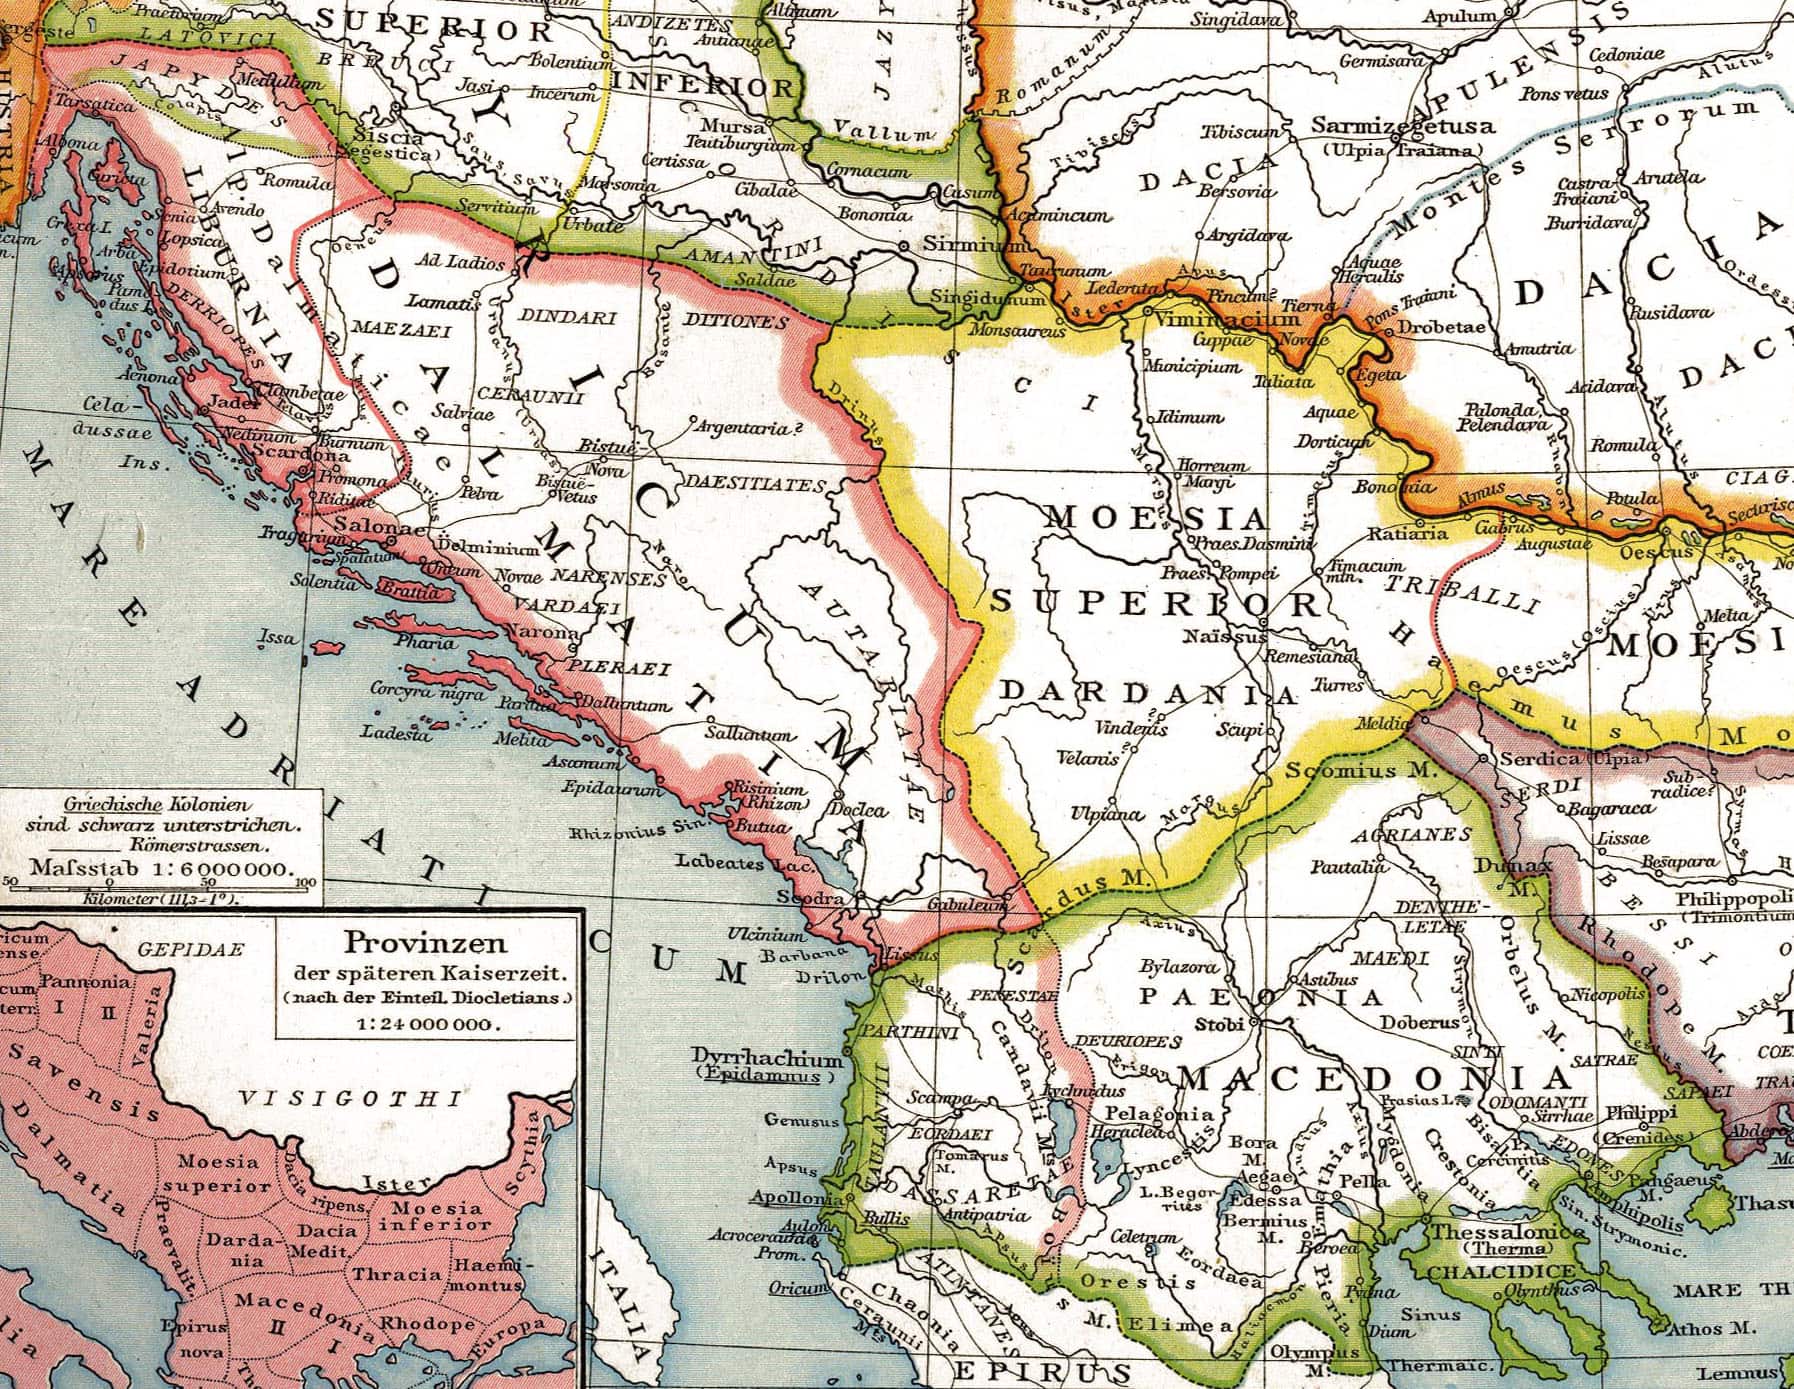 Römische Provinz Dalmatia nach Diokletian, im 3. Jahrhundert n. Chr.